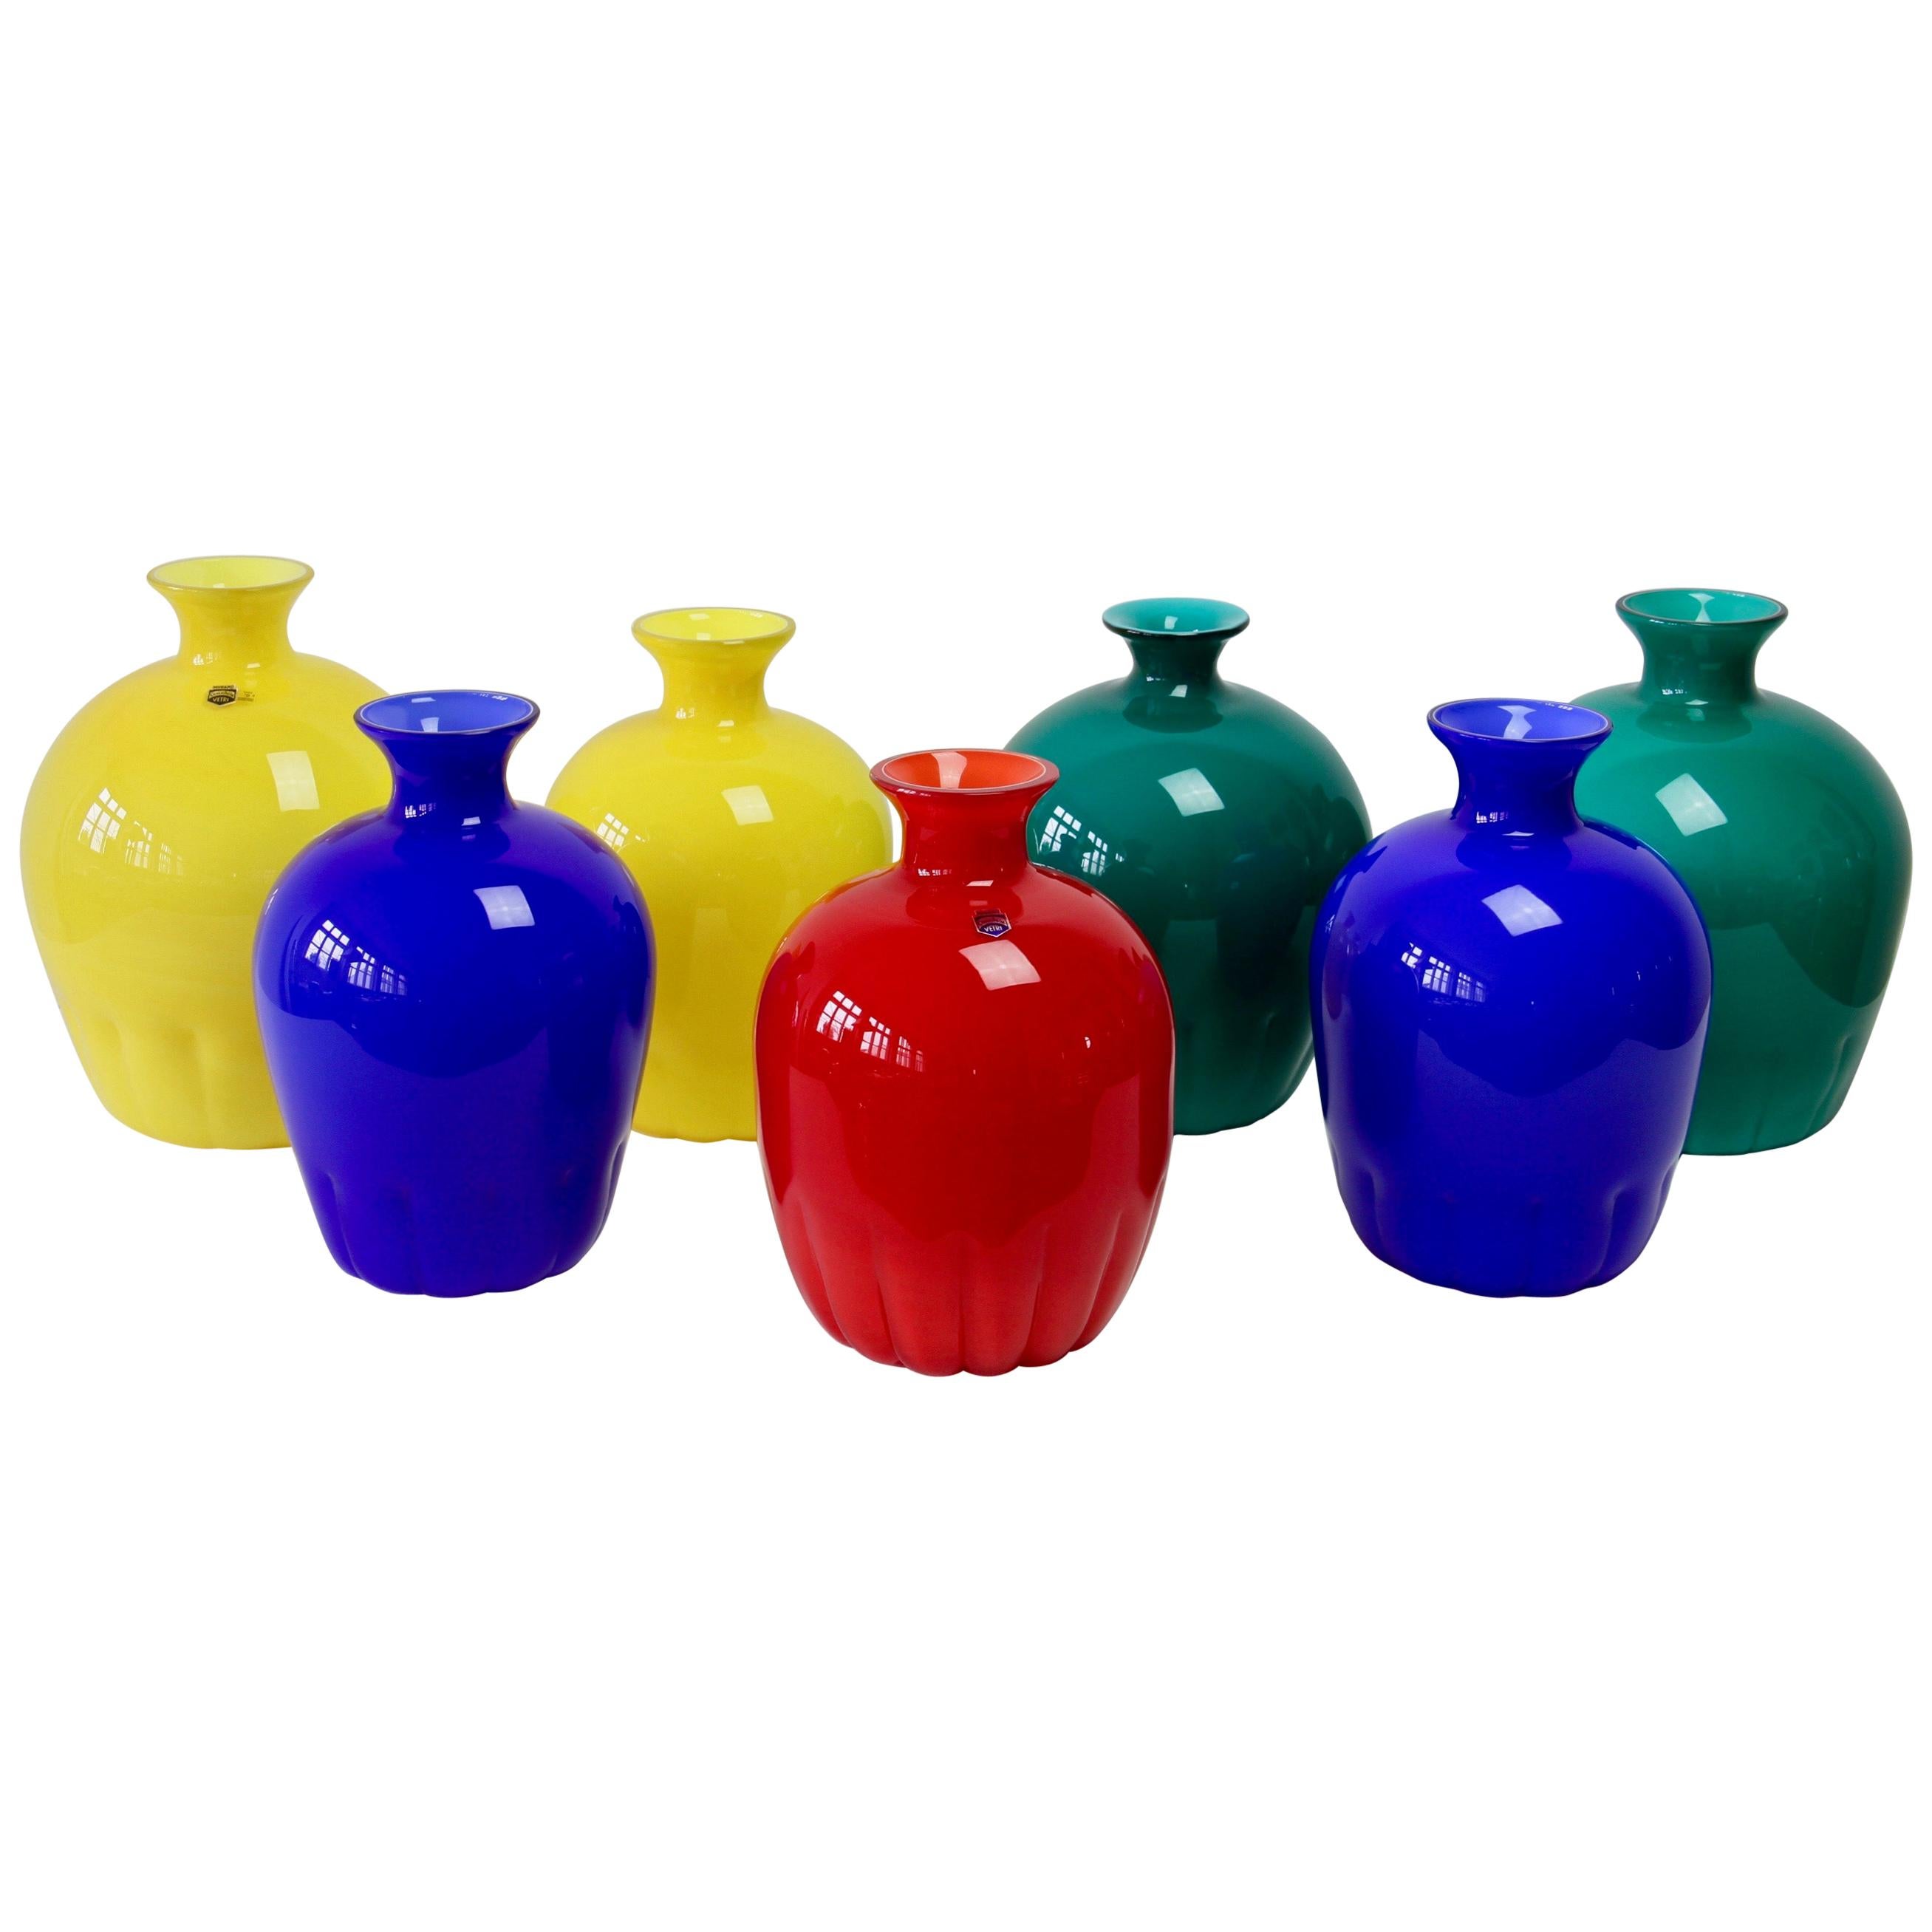 Buntes Cenedese-Set roter, blauer, grüner und gelber italienischer Murano-Vasen im Vintage-Stil